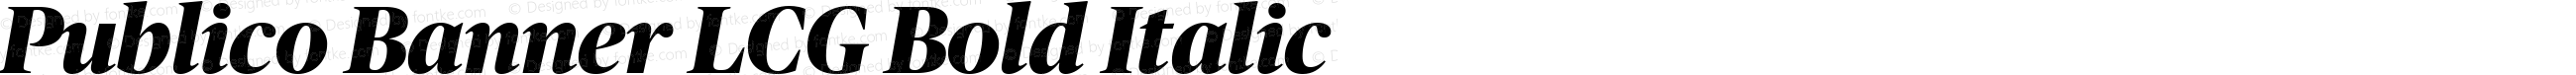 Publico Banner LCG Bold Italic